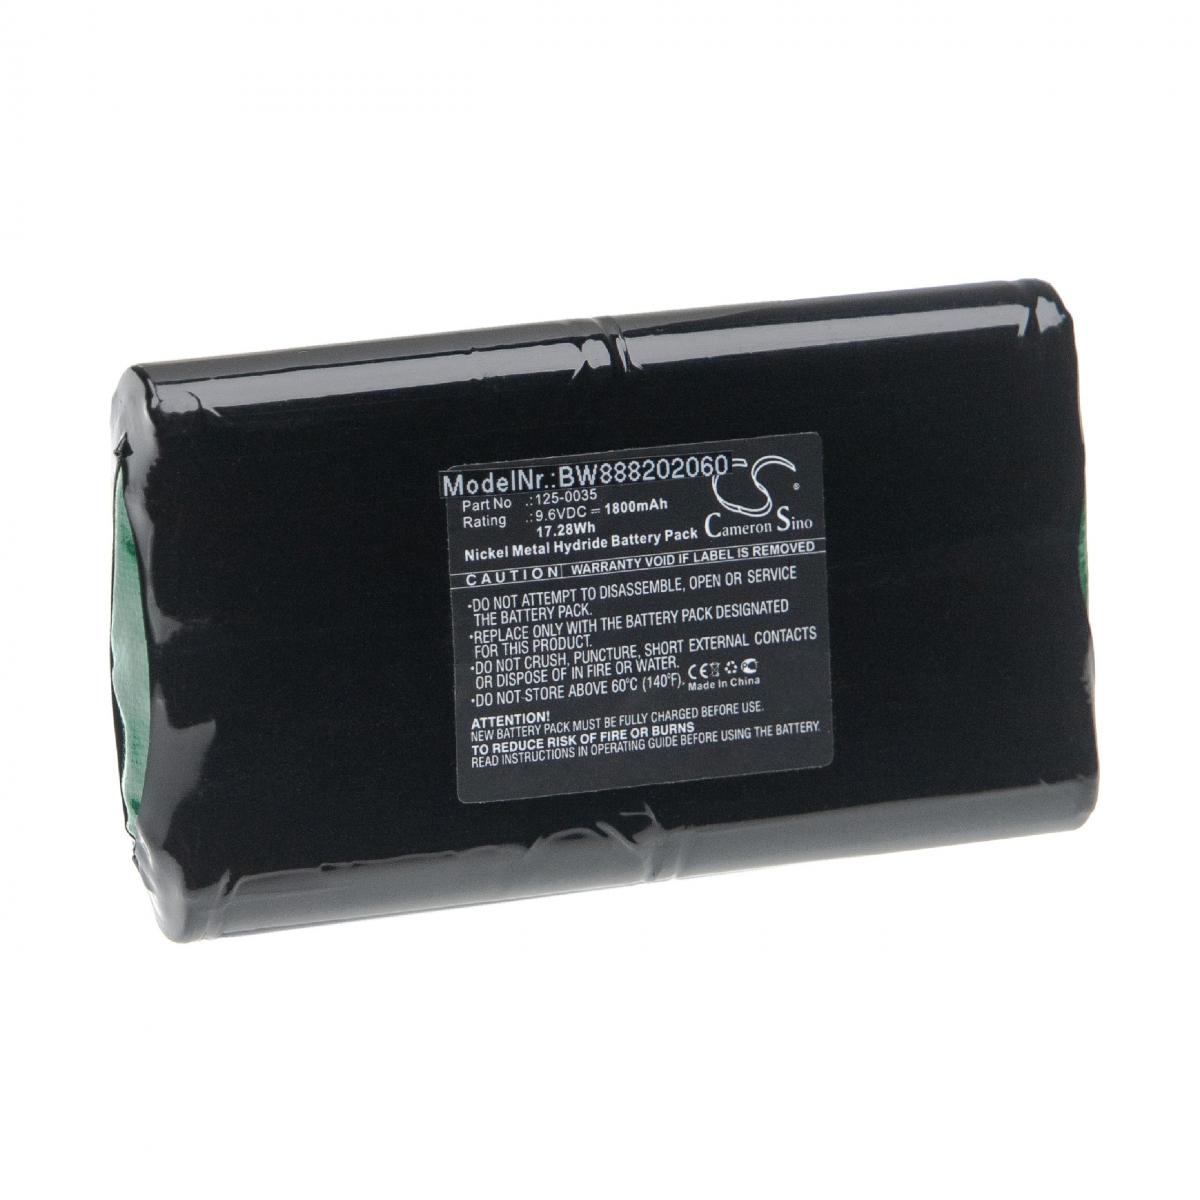 Vhbw - vhbw Batterie remplacement pour Franklin 125-0035 pour outil de mesure (1800mAh, 9,6V, NiMH) - Piles rechargeables